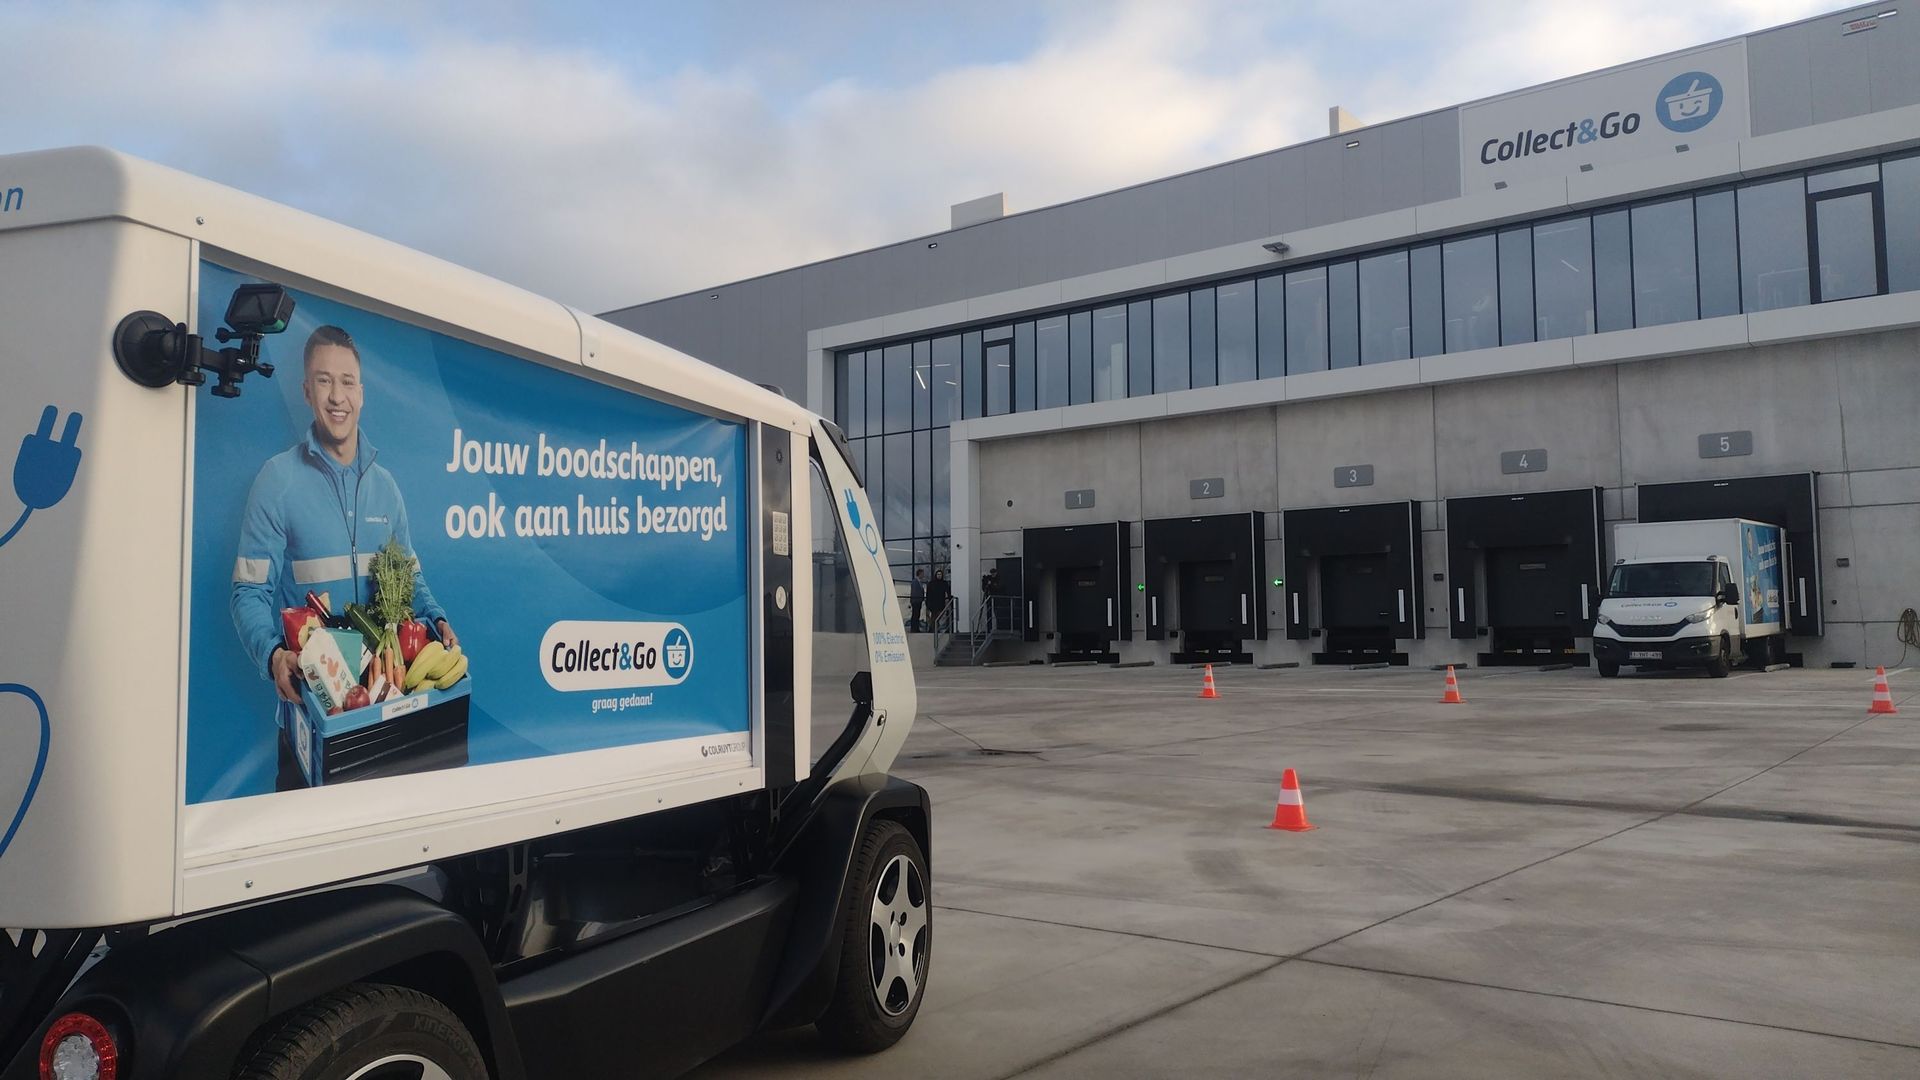 Colruyt présente un véhicule à conduite autonome pour livrer les courses, mercredi 23 novembre 2022 à Londerzeel.